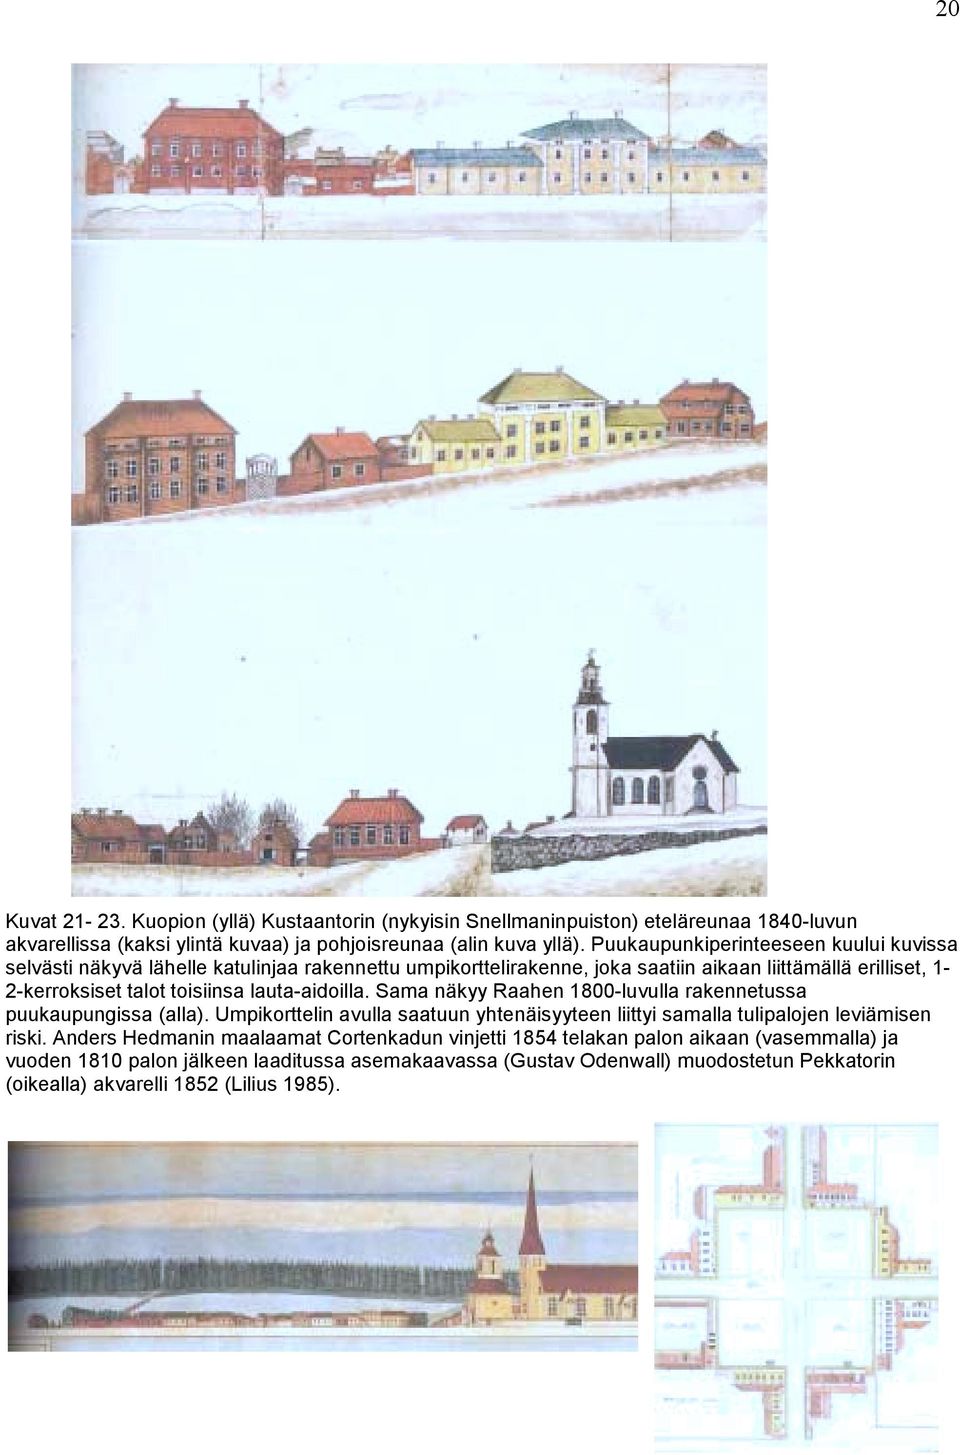 lauta-aidoilla. Sama näkyy Raahen 1800-luvulla rakennetussa puukaupungissa (alla). Umpikorttelin avulla saatuun yhtenäisyyteen liittyi samalla tulipalojen leviämisen riski.